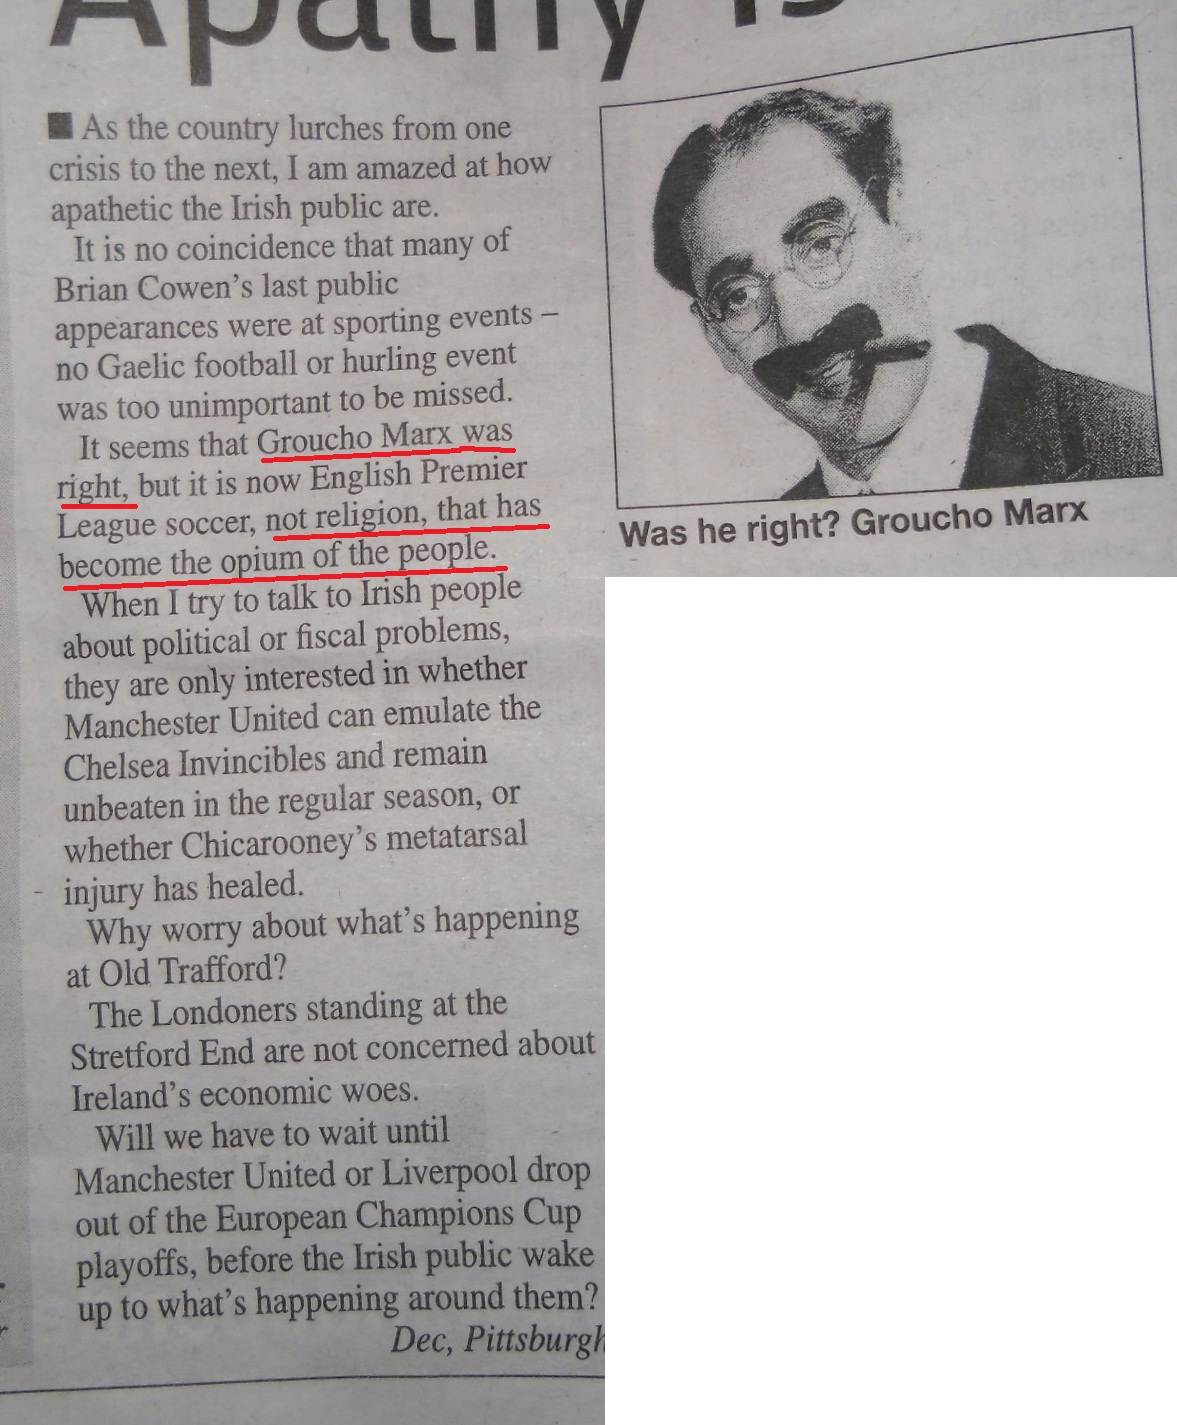 Found in a Dublin newspaper.